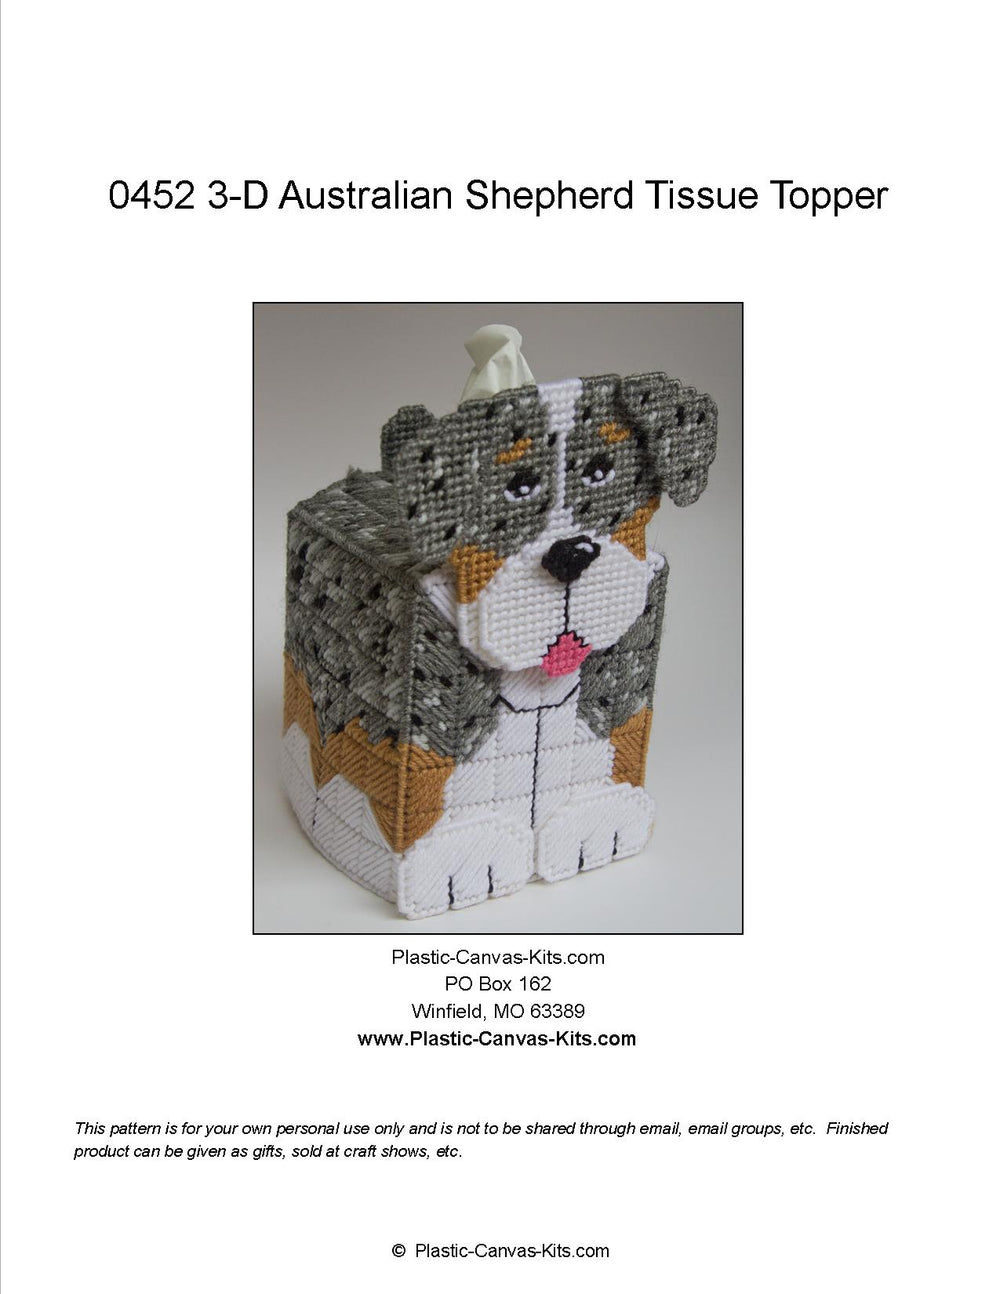 Australian Shepherd 3-D Tissue Topper